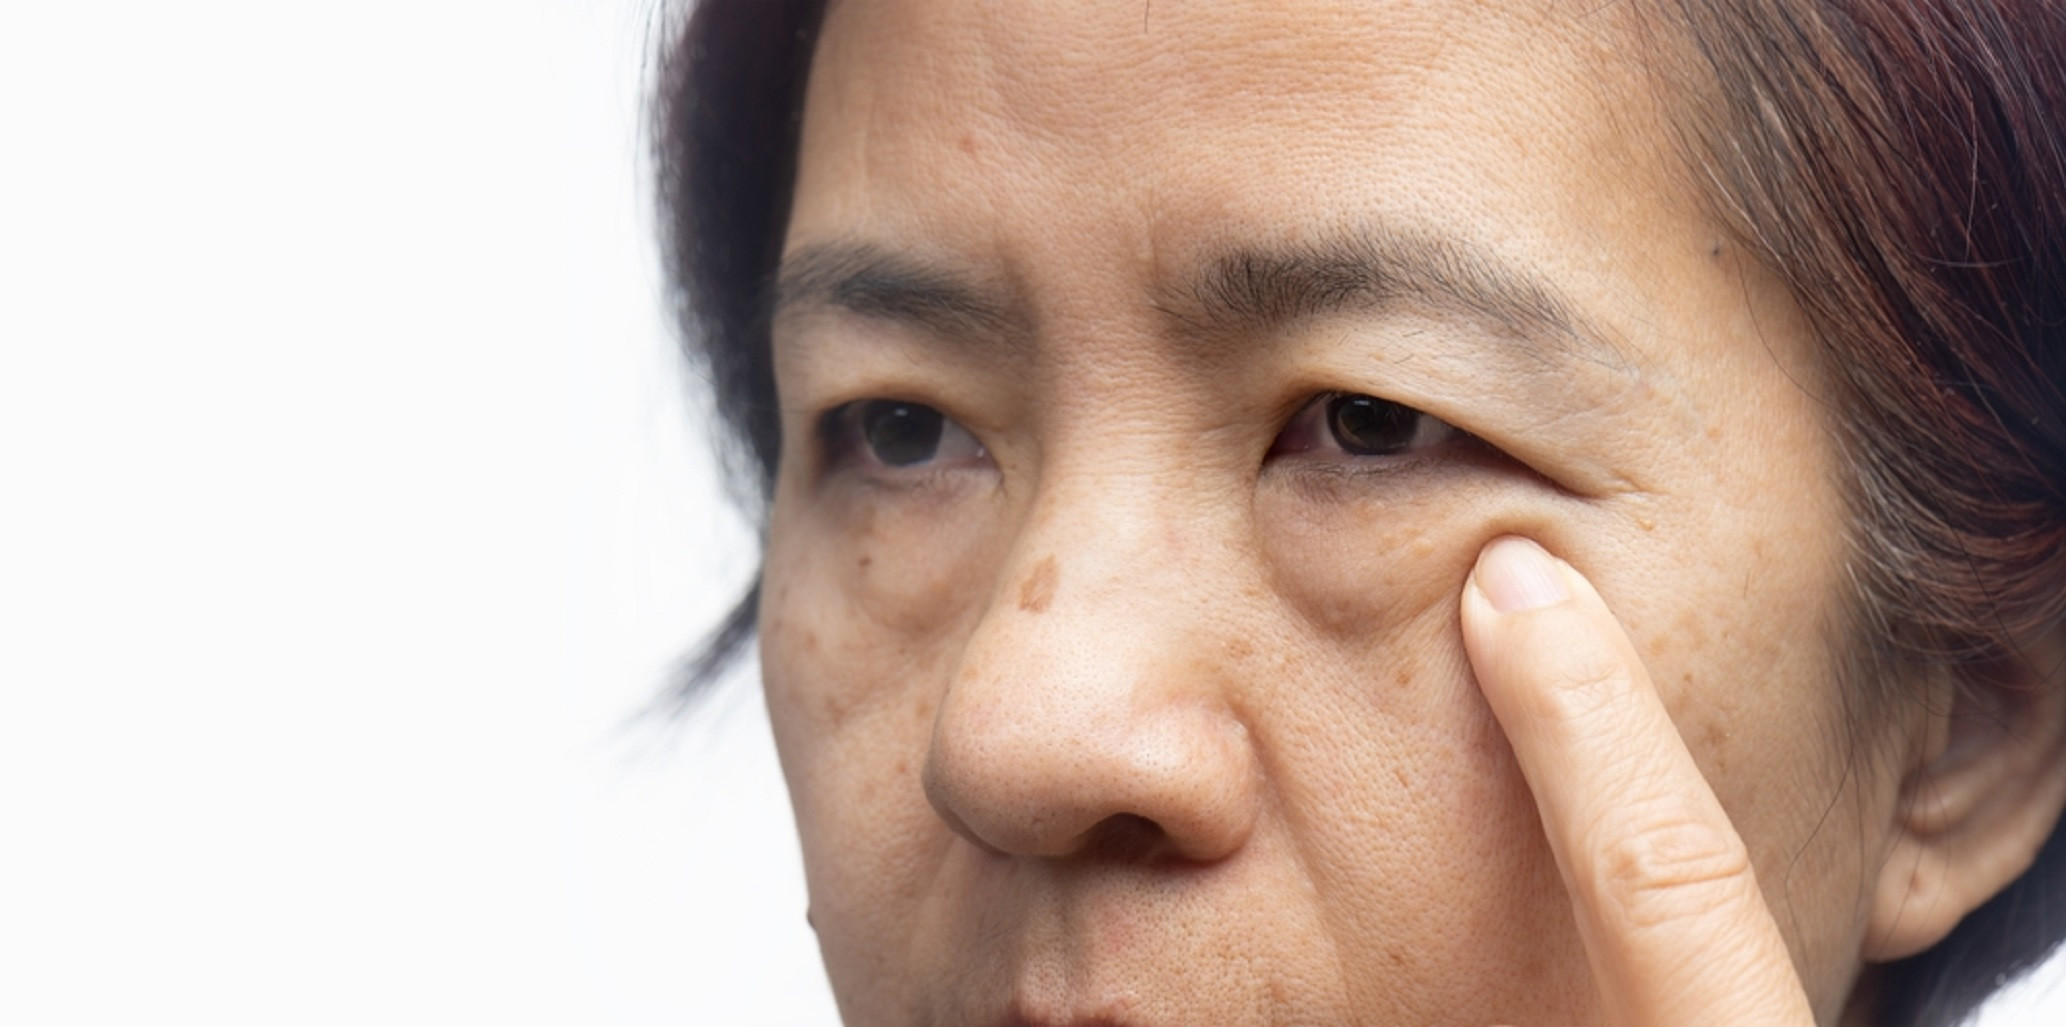 Нервный тик глаз: причины подергивания века и лечение